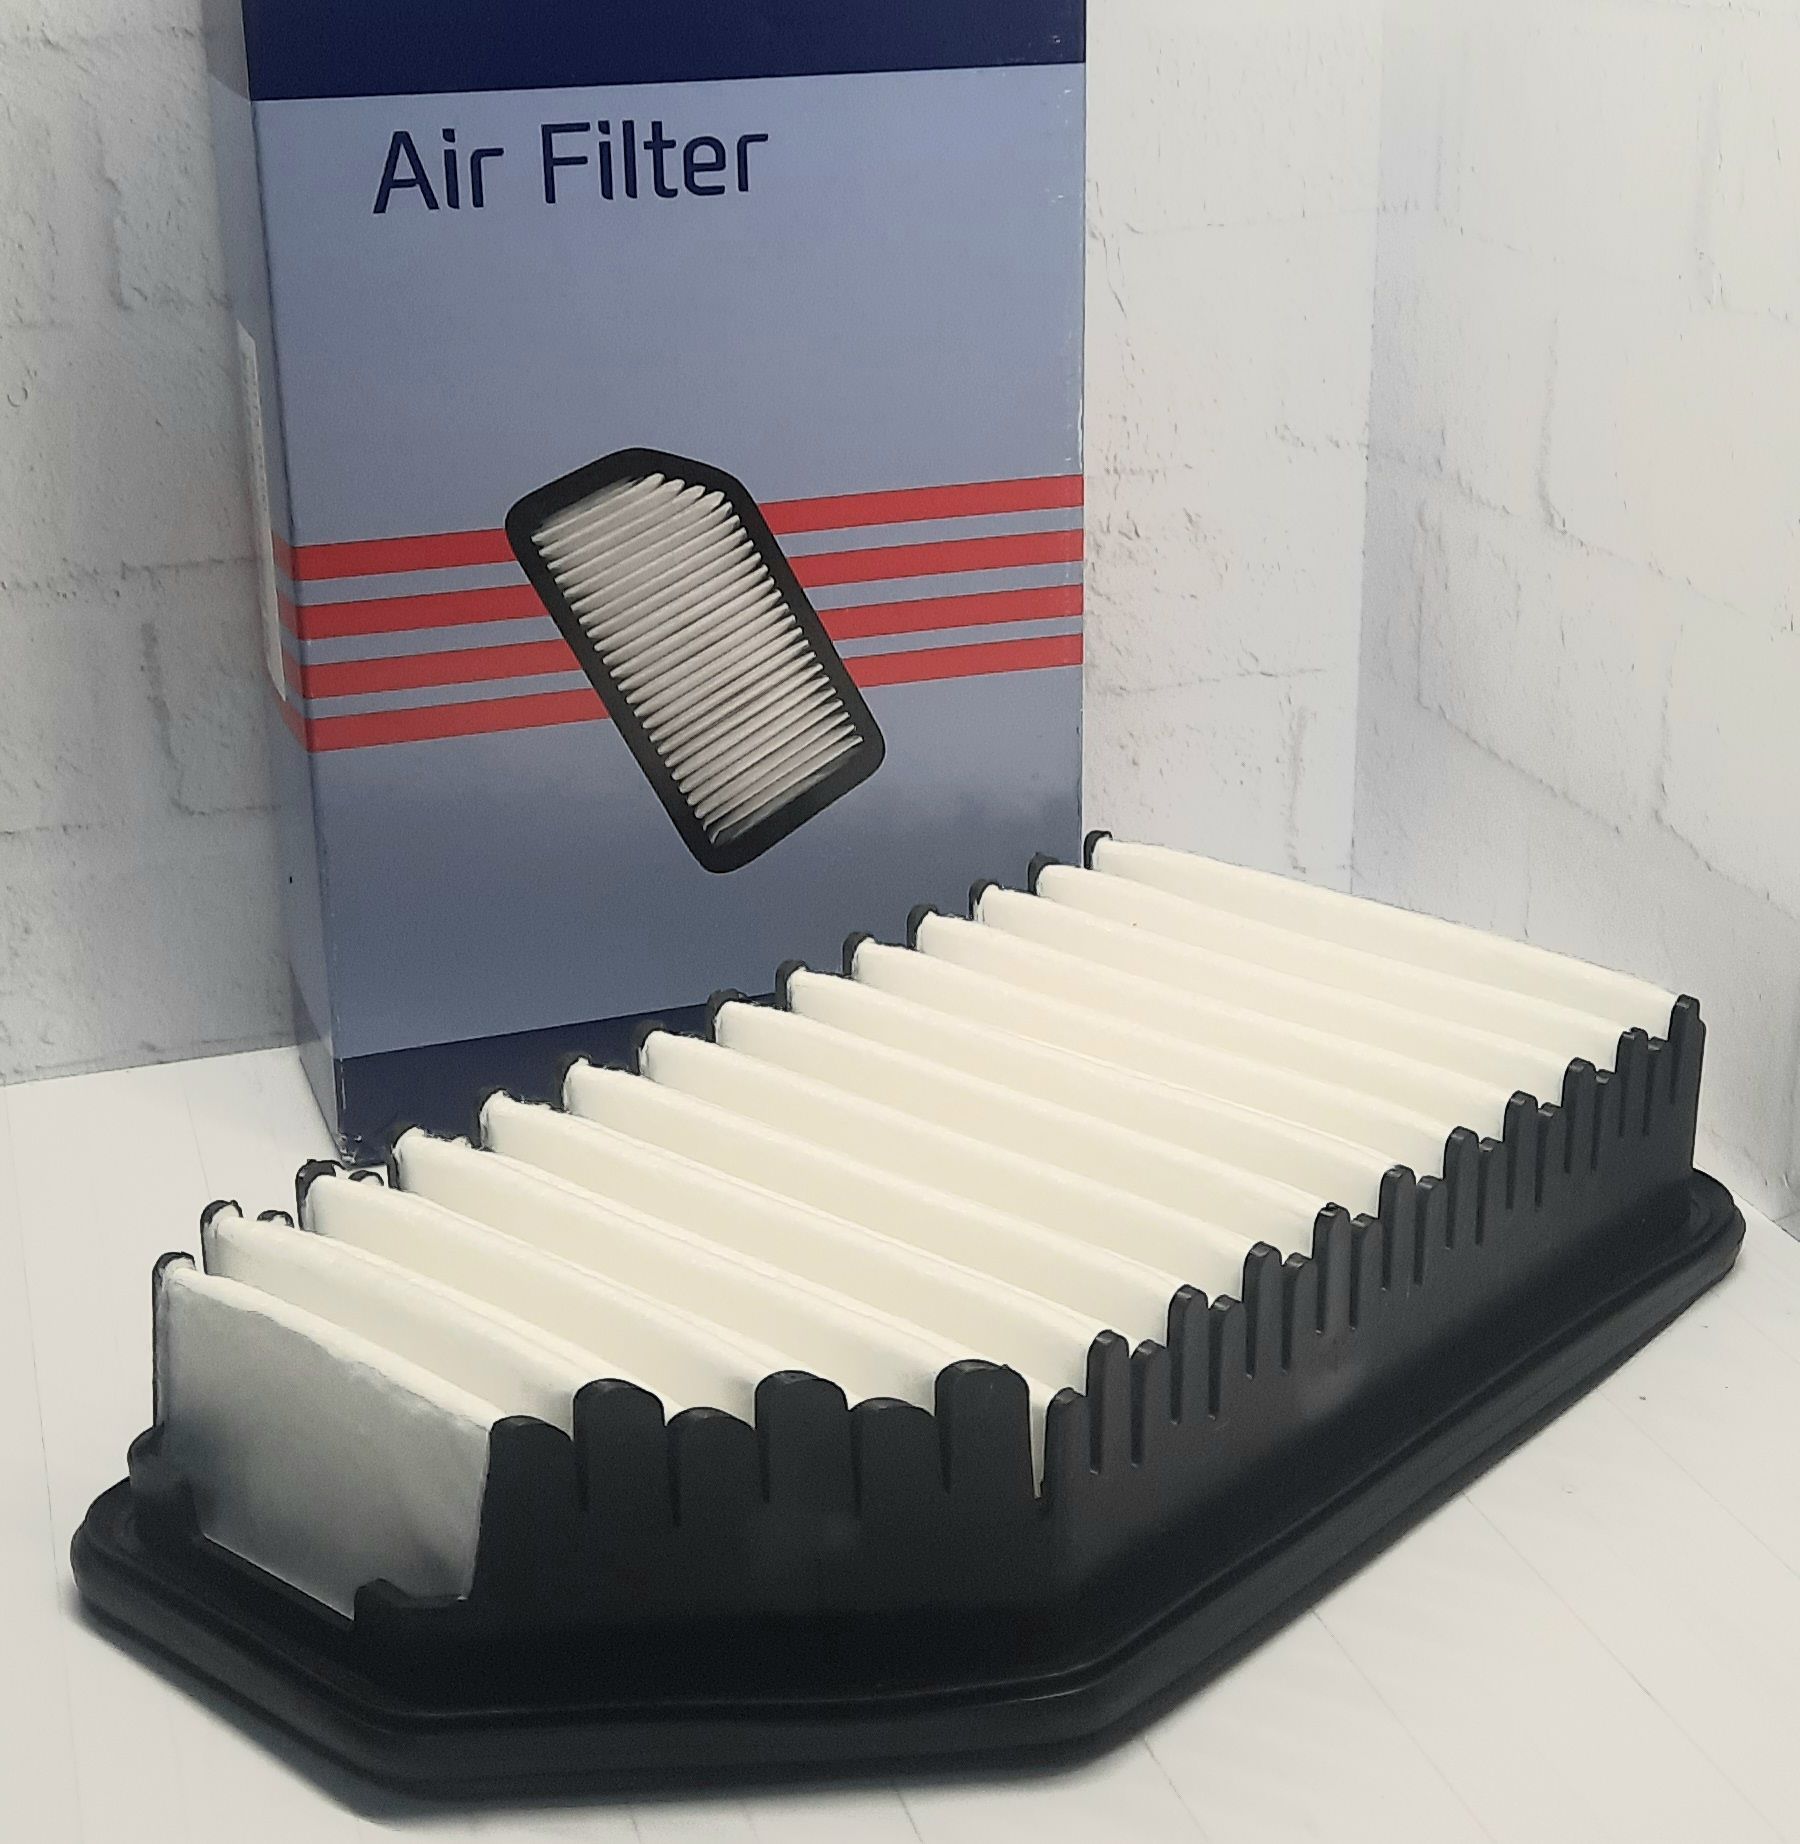 Воздушный фильтр солярис 2. Фильтр воздушный Солярис. Фильтр воздушные Солярис СКТ. Фильтр воздушный Солярис 2019 год. Воздушный фильтр Солярис автомоё.